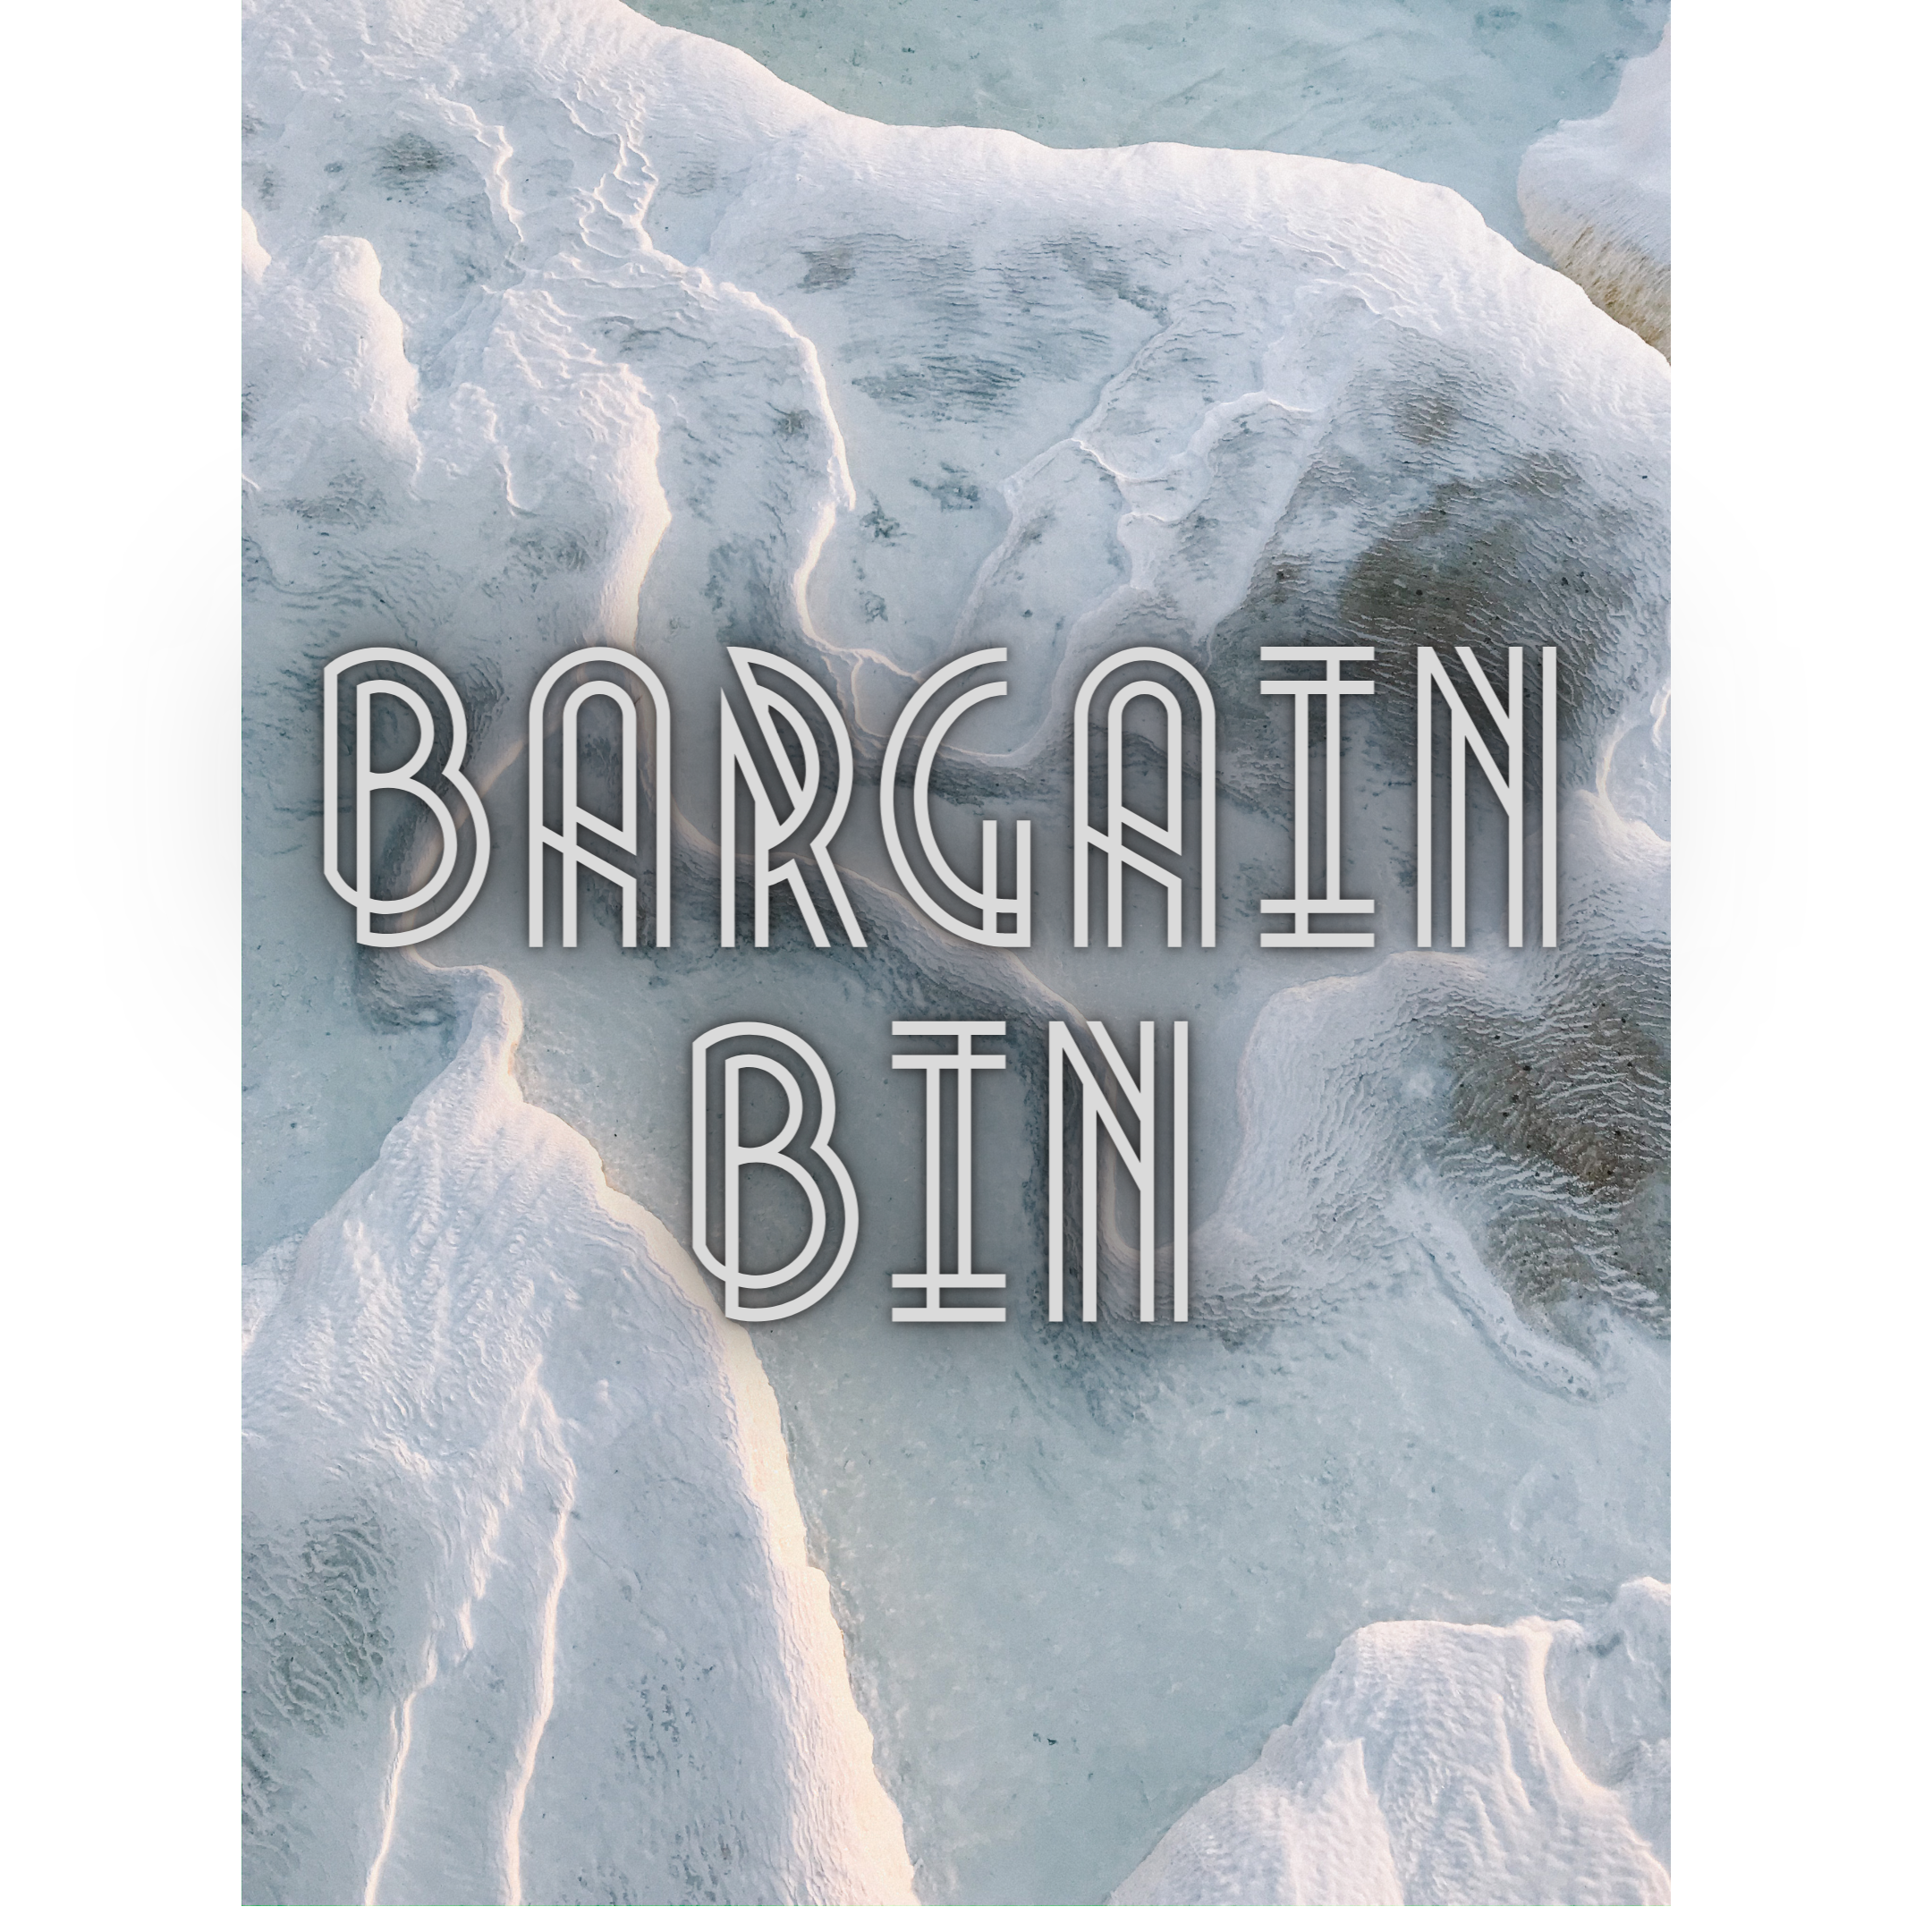 BARGAIN BIN